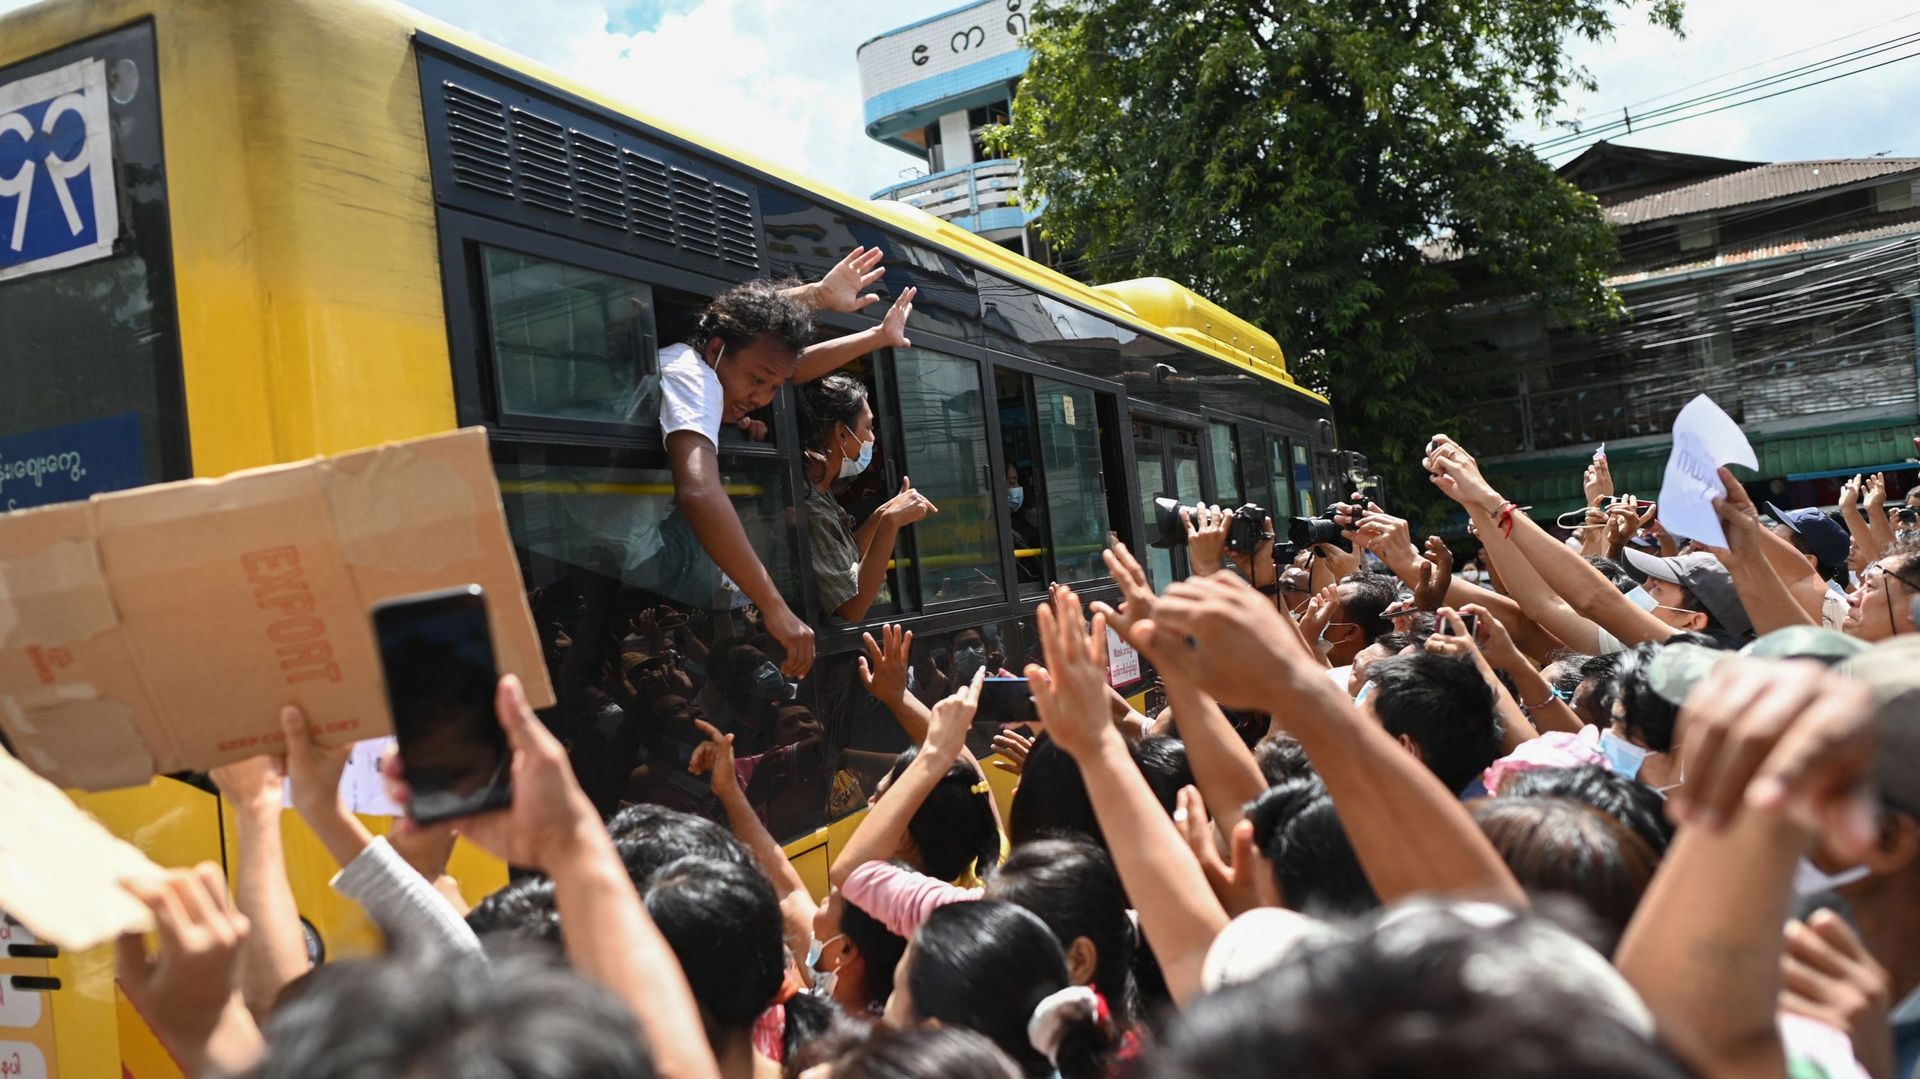 Les détenus libérés de la prison d'Insein célèbrent avec la foule à Yangon le 19 octobre 2021, alors que les autorités libèrent des milliers de personnes emprisonnées pour avoir protesté contre le coup d'État de février qui a renversé le gouvernement civi